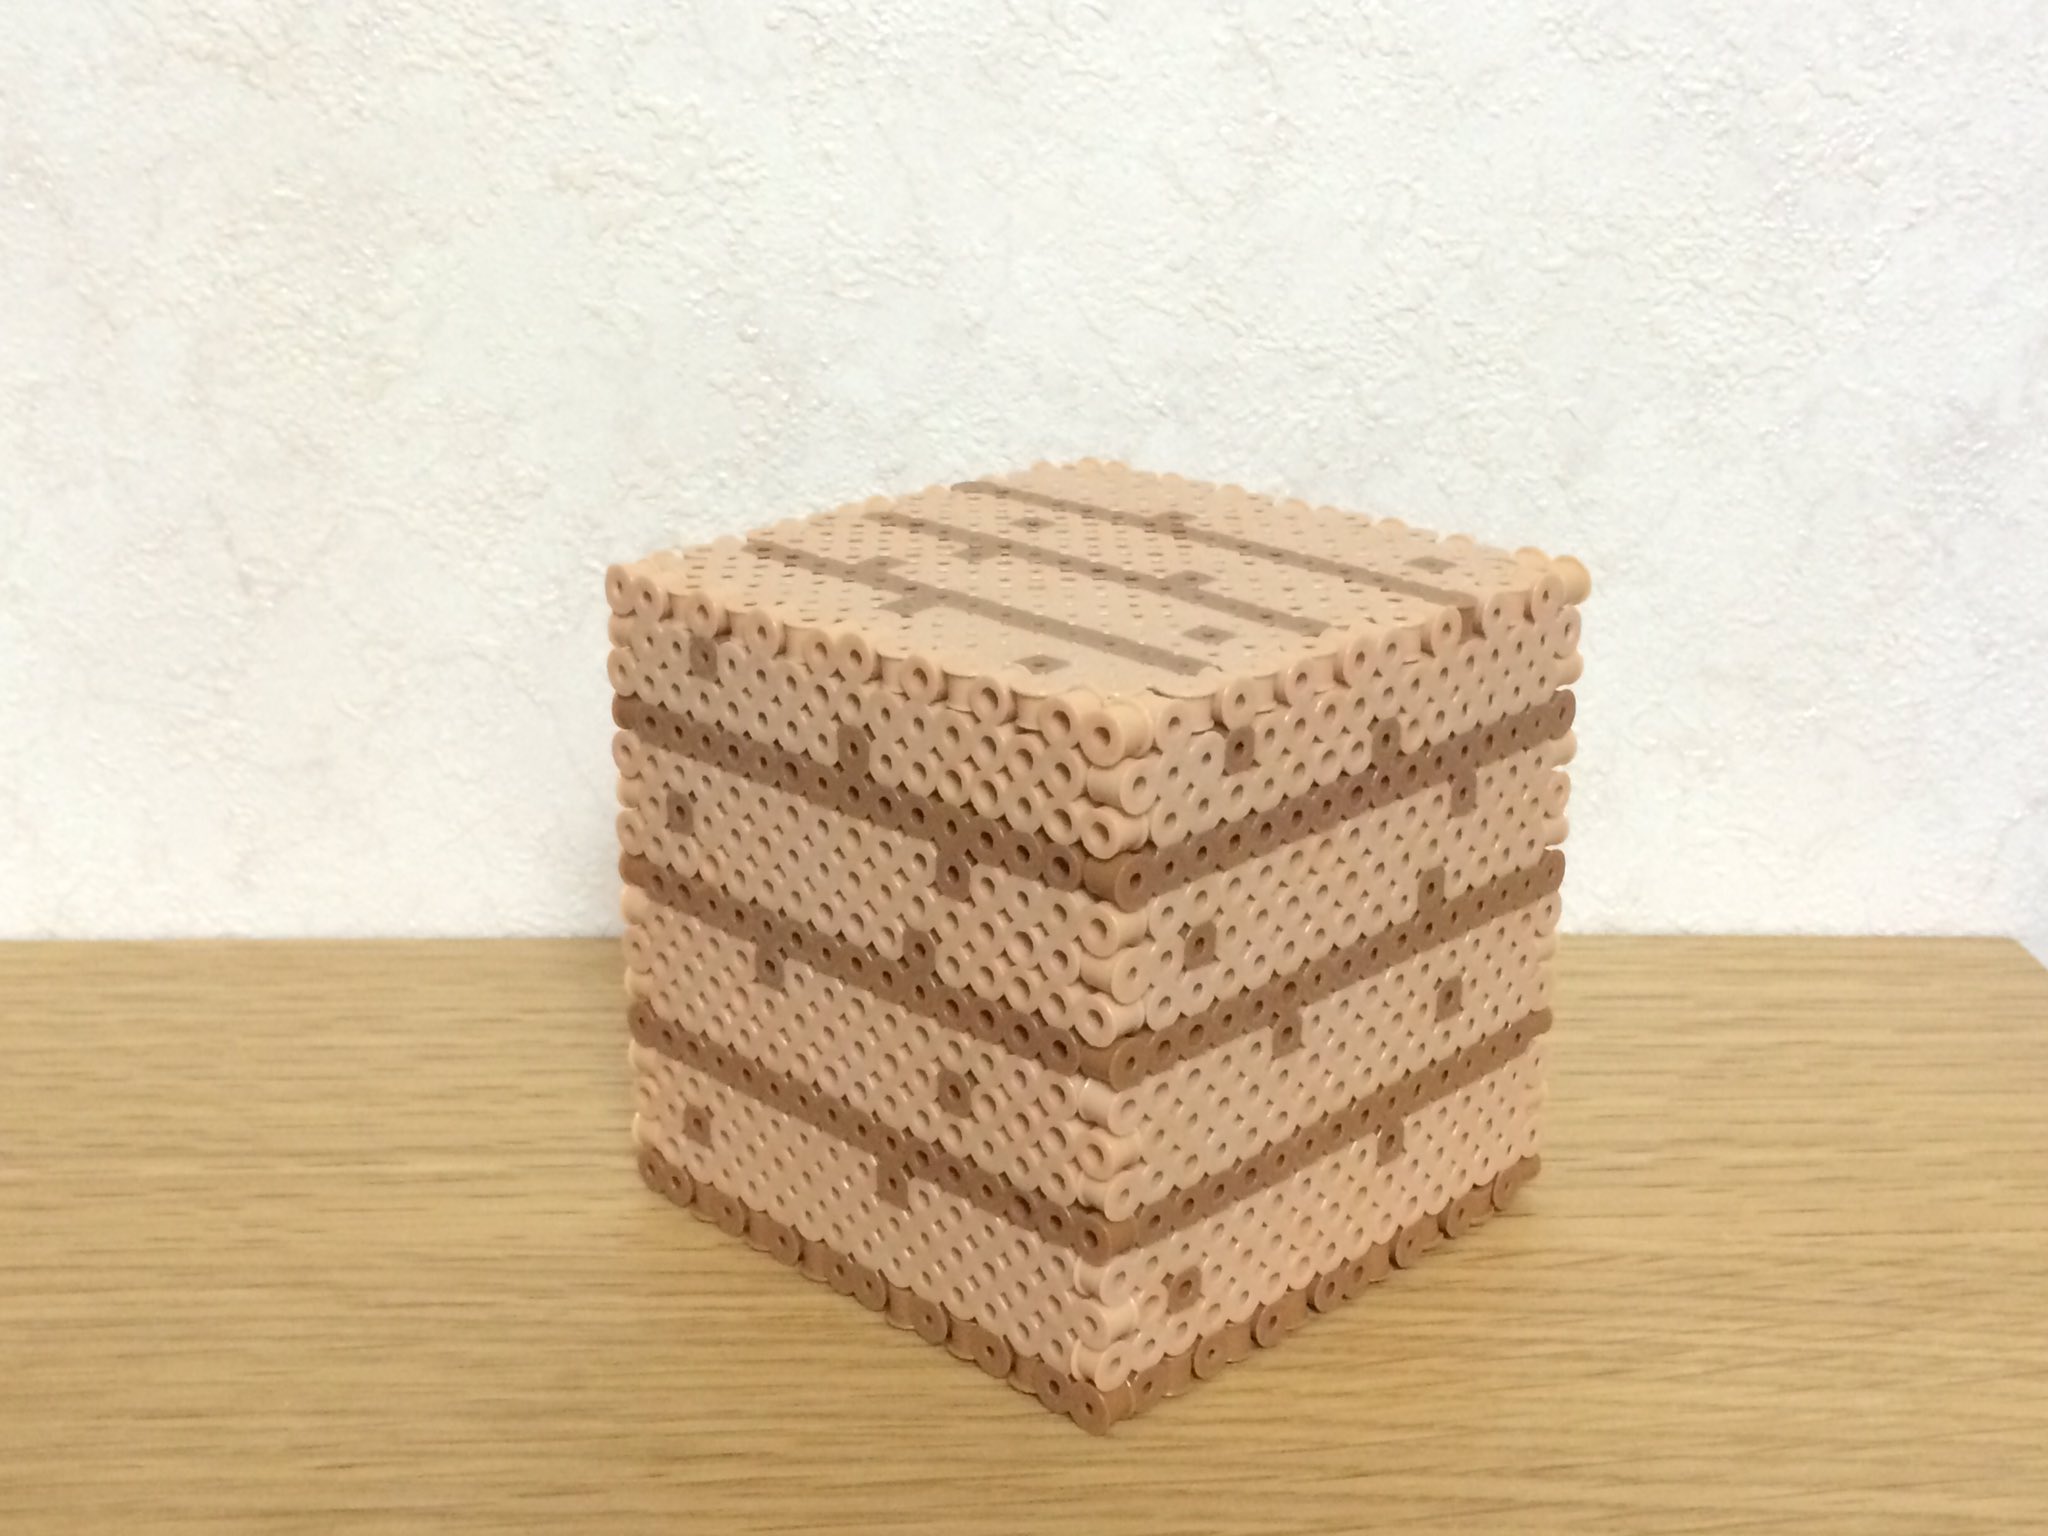 Sappoi さっぽい 立体アイロンビーズ ダイヤモンド鉱石とオークの木材作りました 最近作品がするする作れていい感じです 山完成まであと少しです O アイロンビーズ パーラービーズ Minecraft